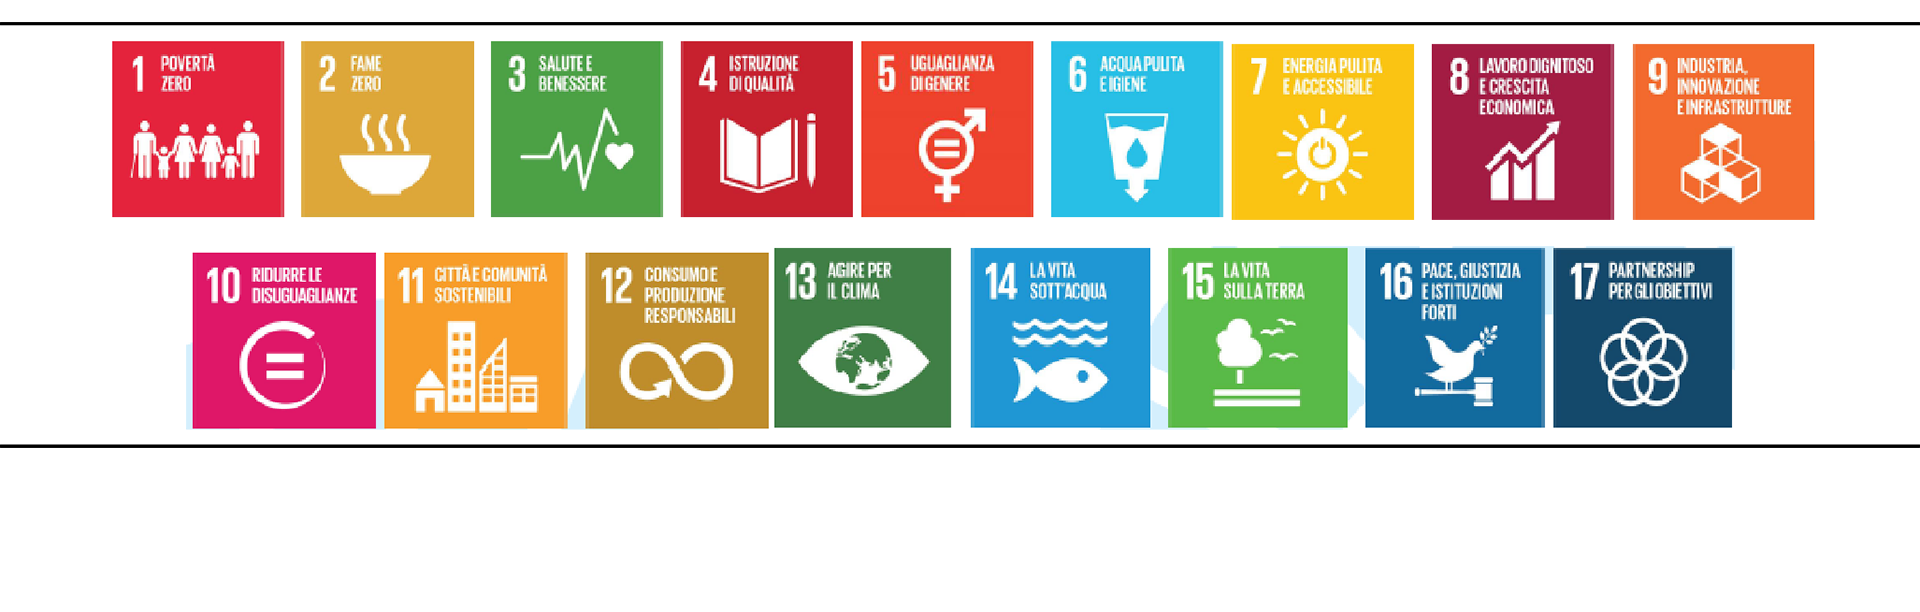 UN - Agenda 2030 - SDGs - infografica